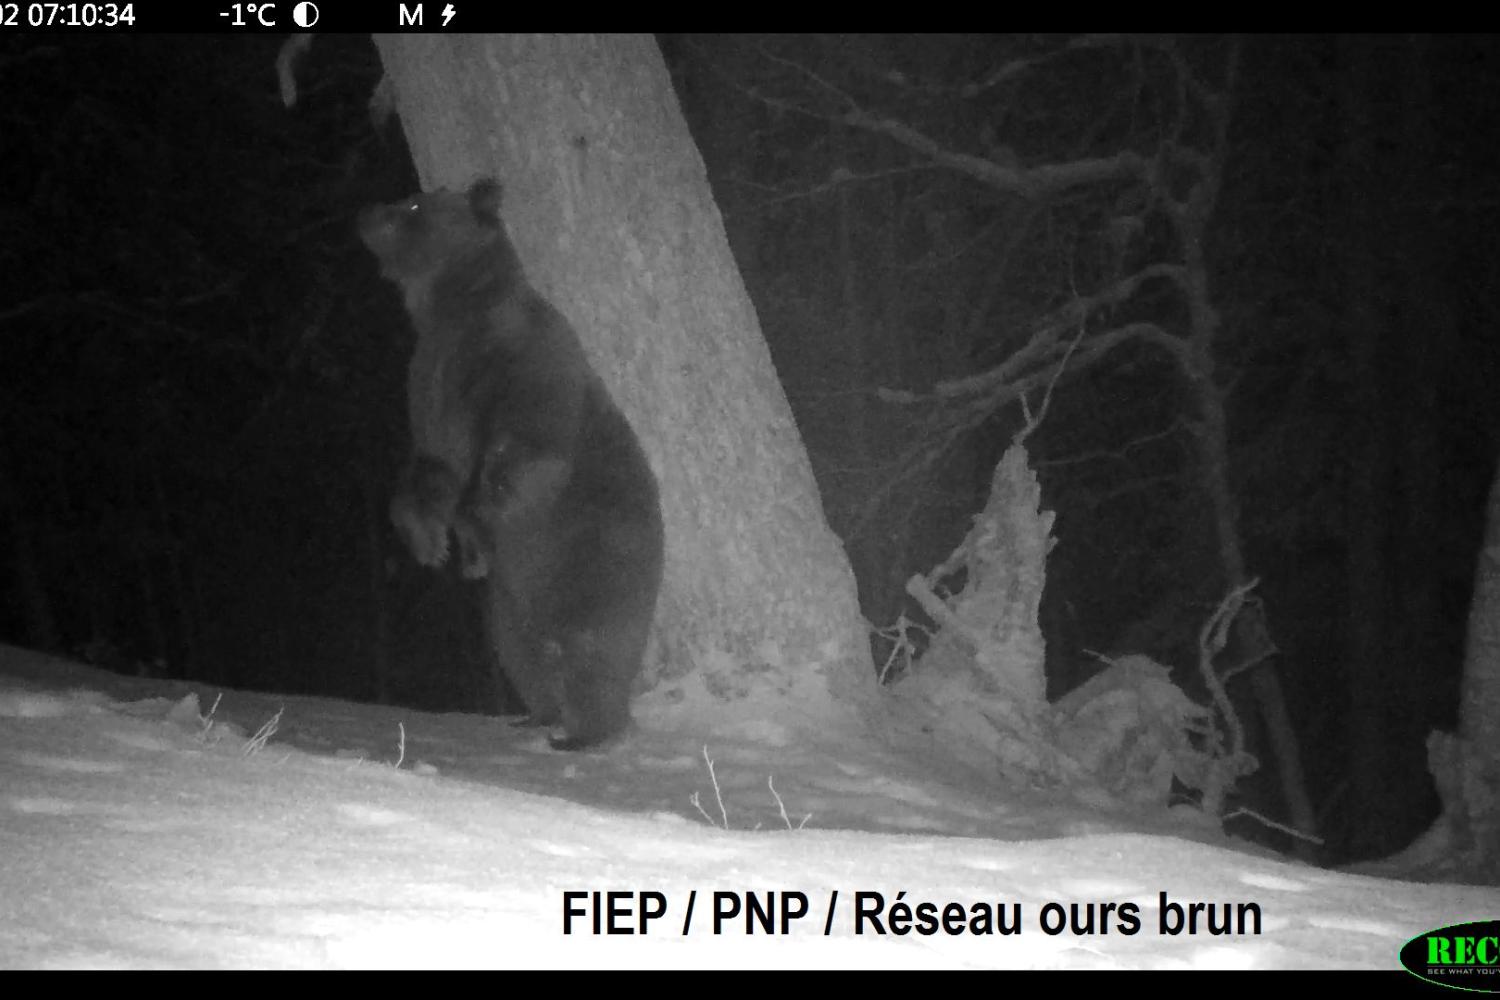 L'ours Rodri ©FIEP/ PNP/ Réseau Ours brun